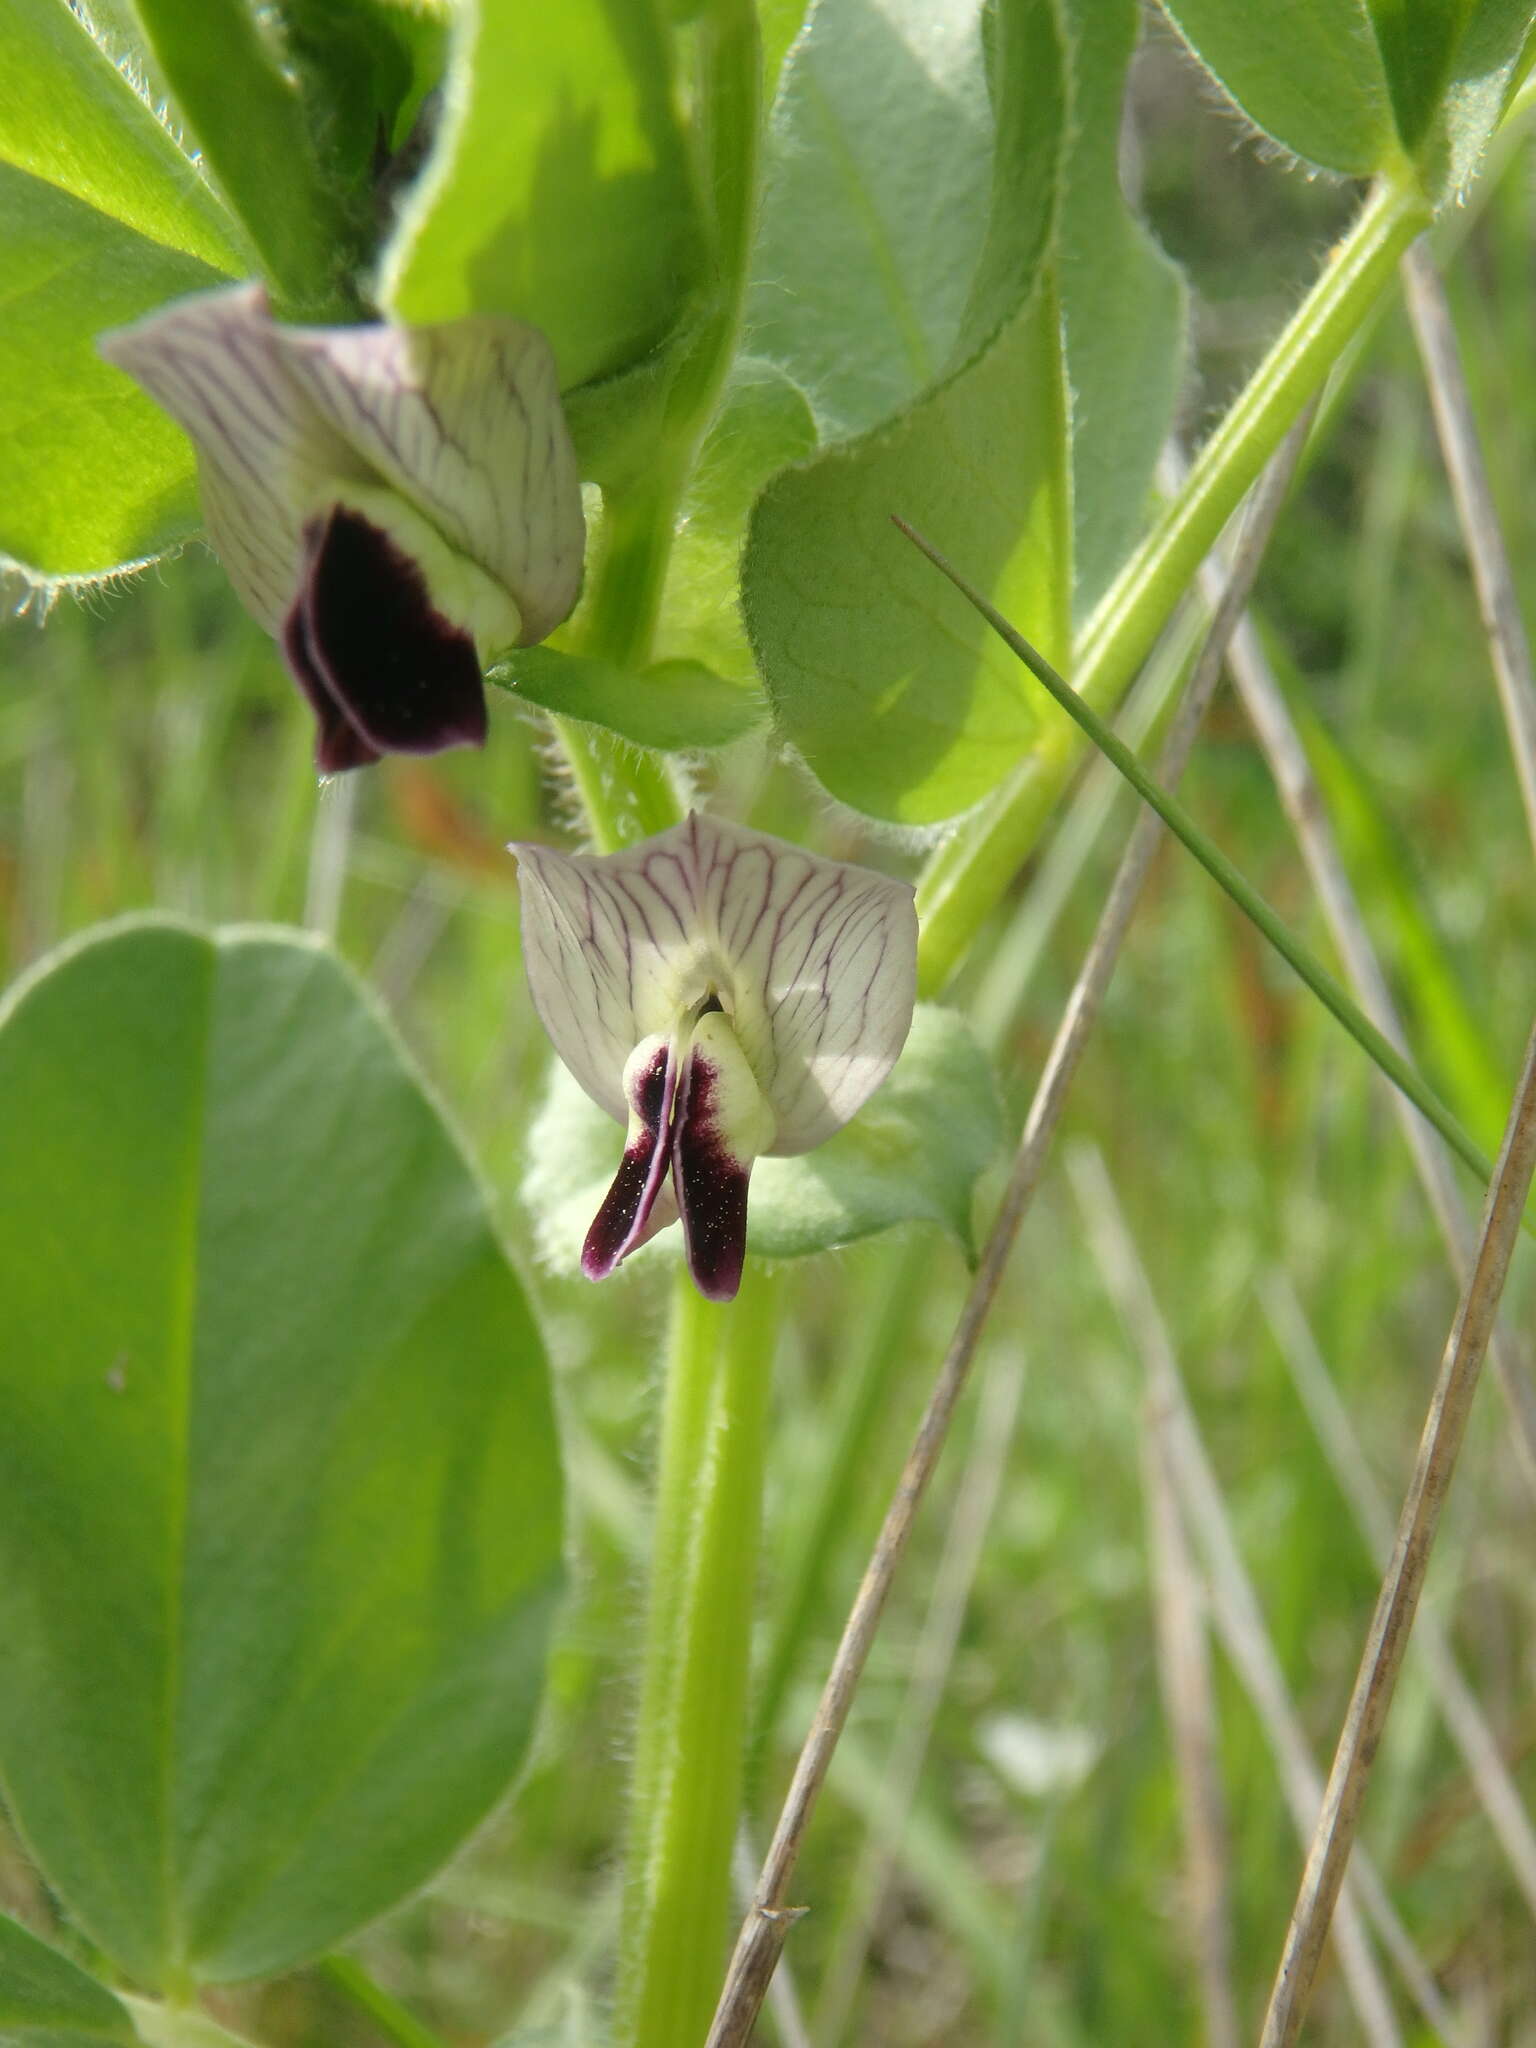 Imagem de Vicia narbonensis L.